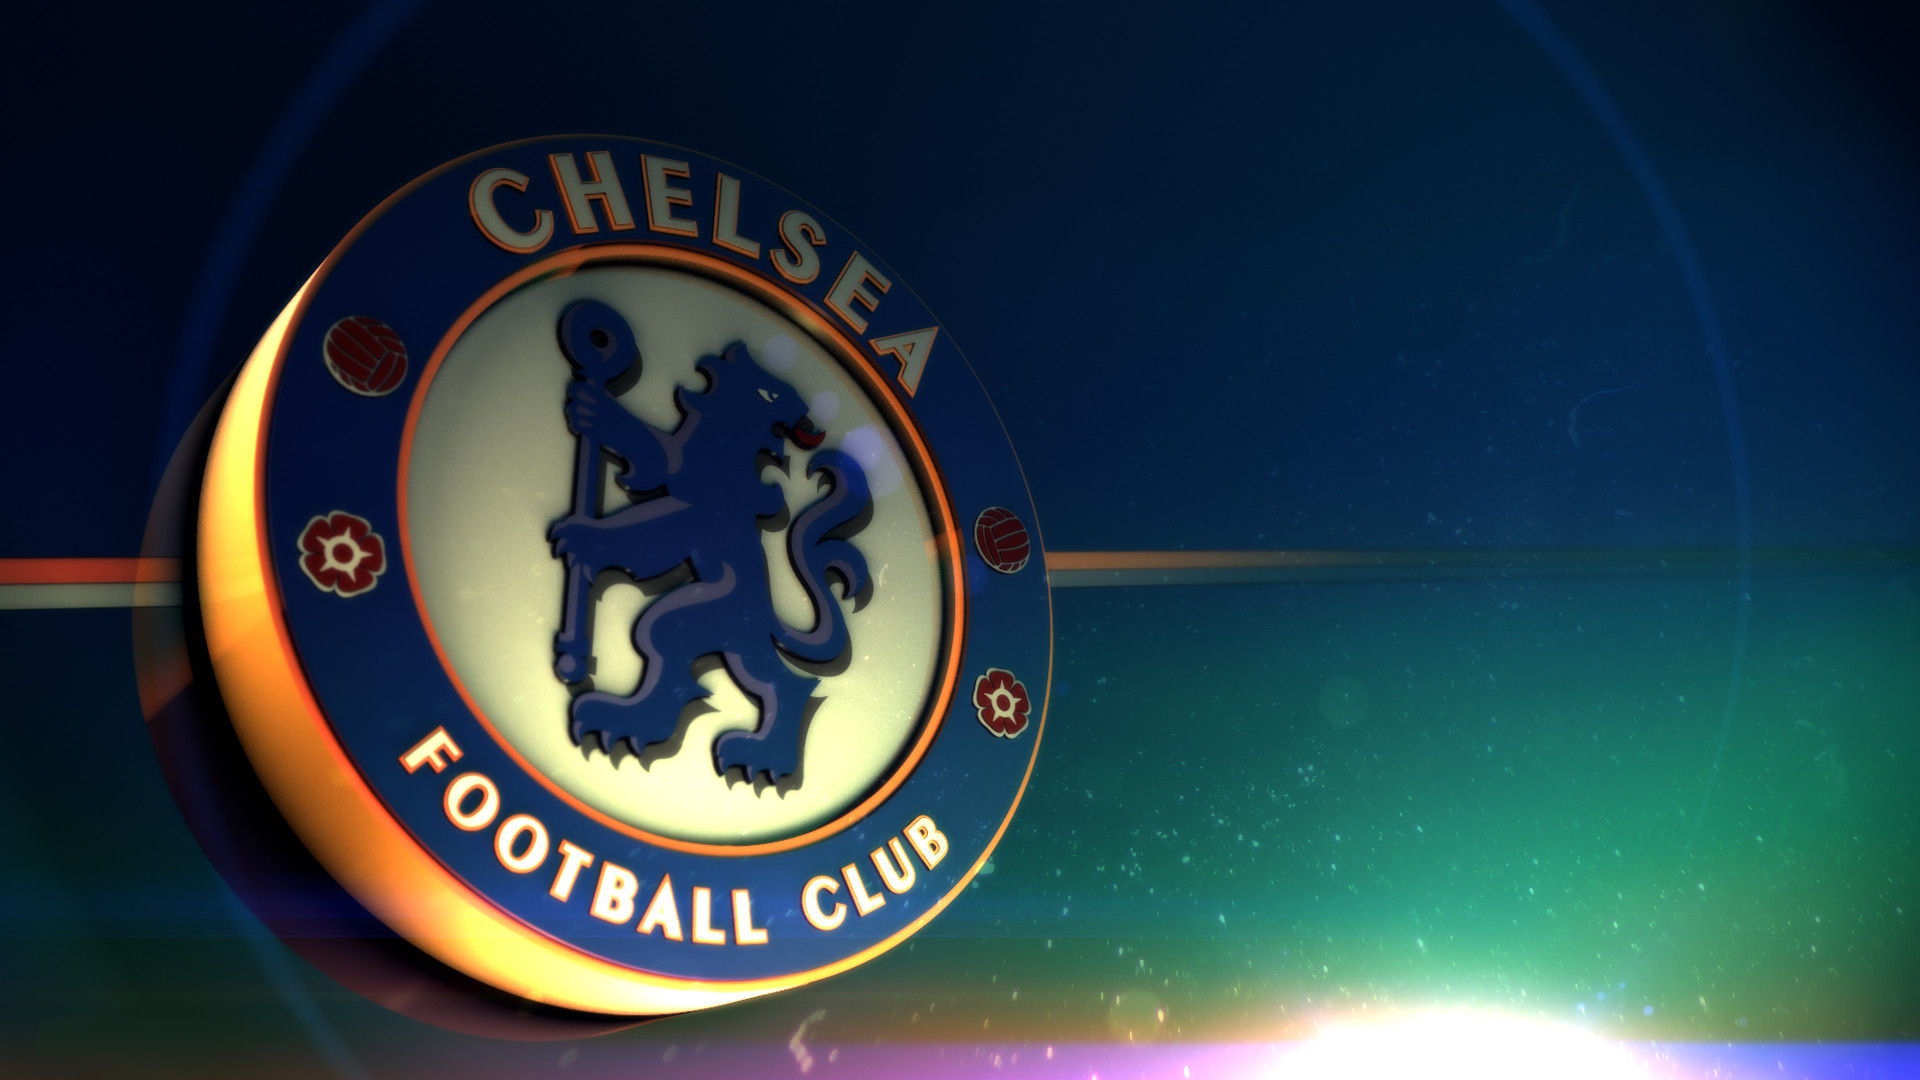 HD Chelsea Fc Logo Wallpaper